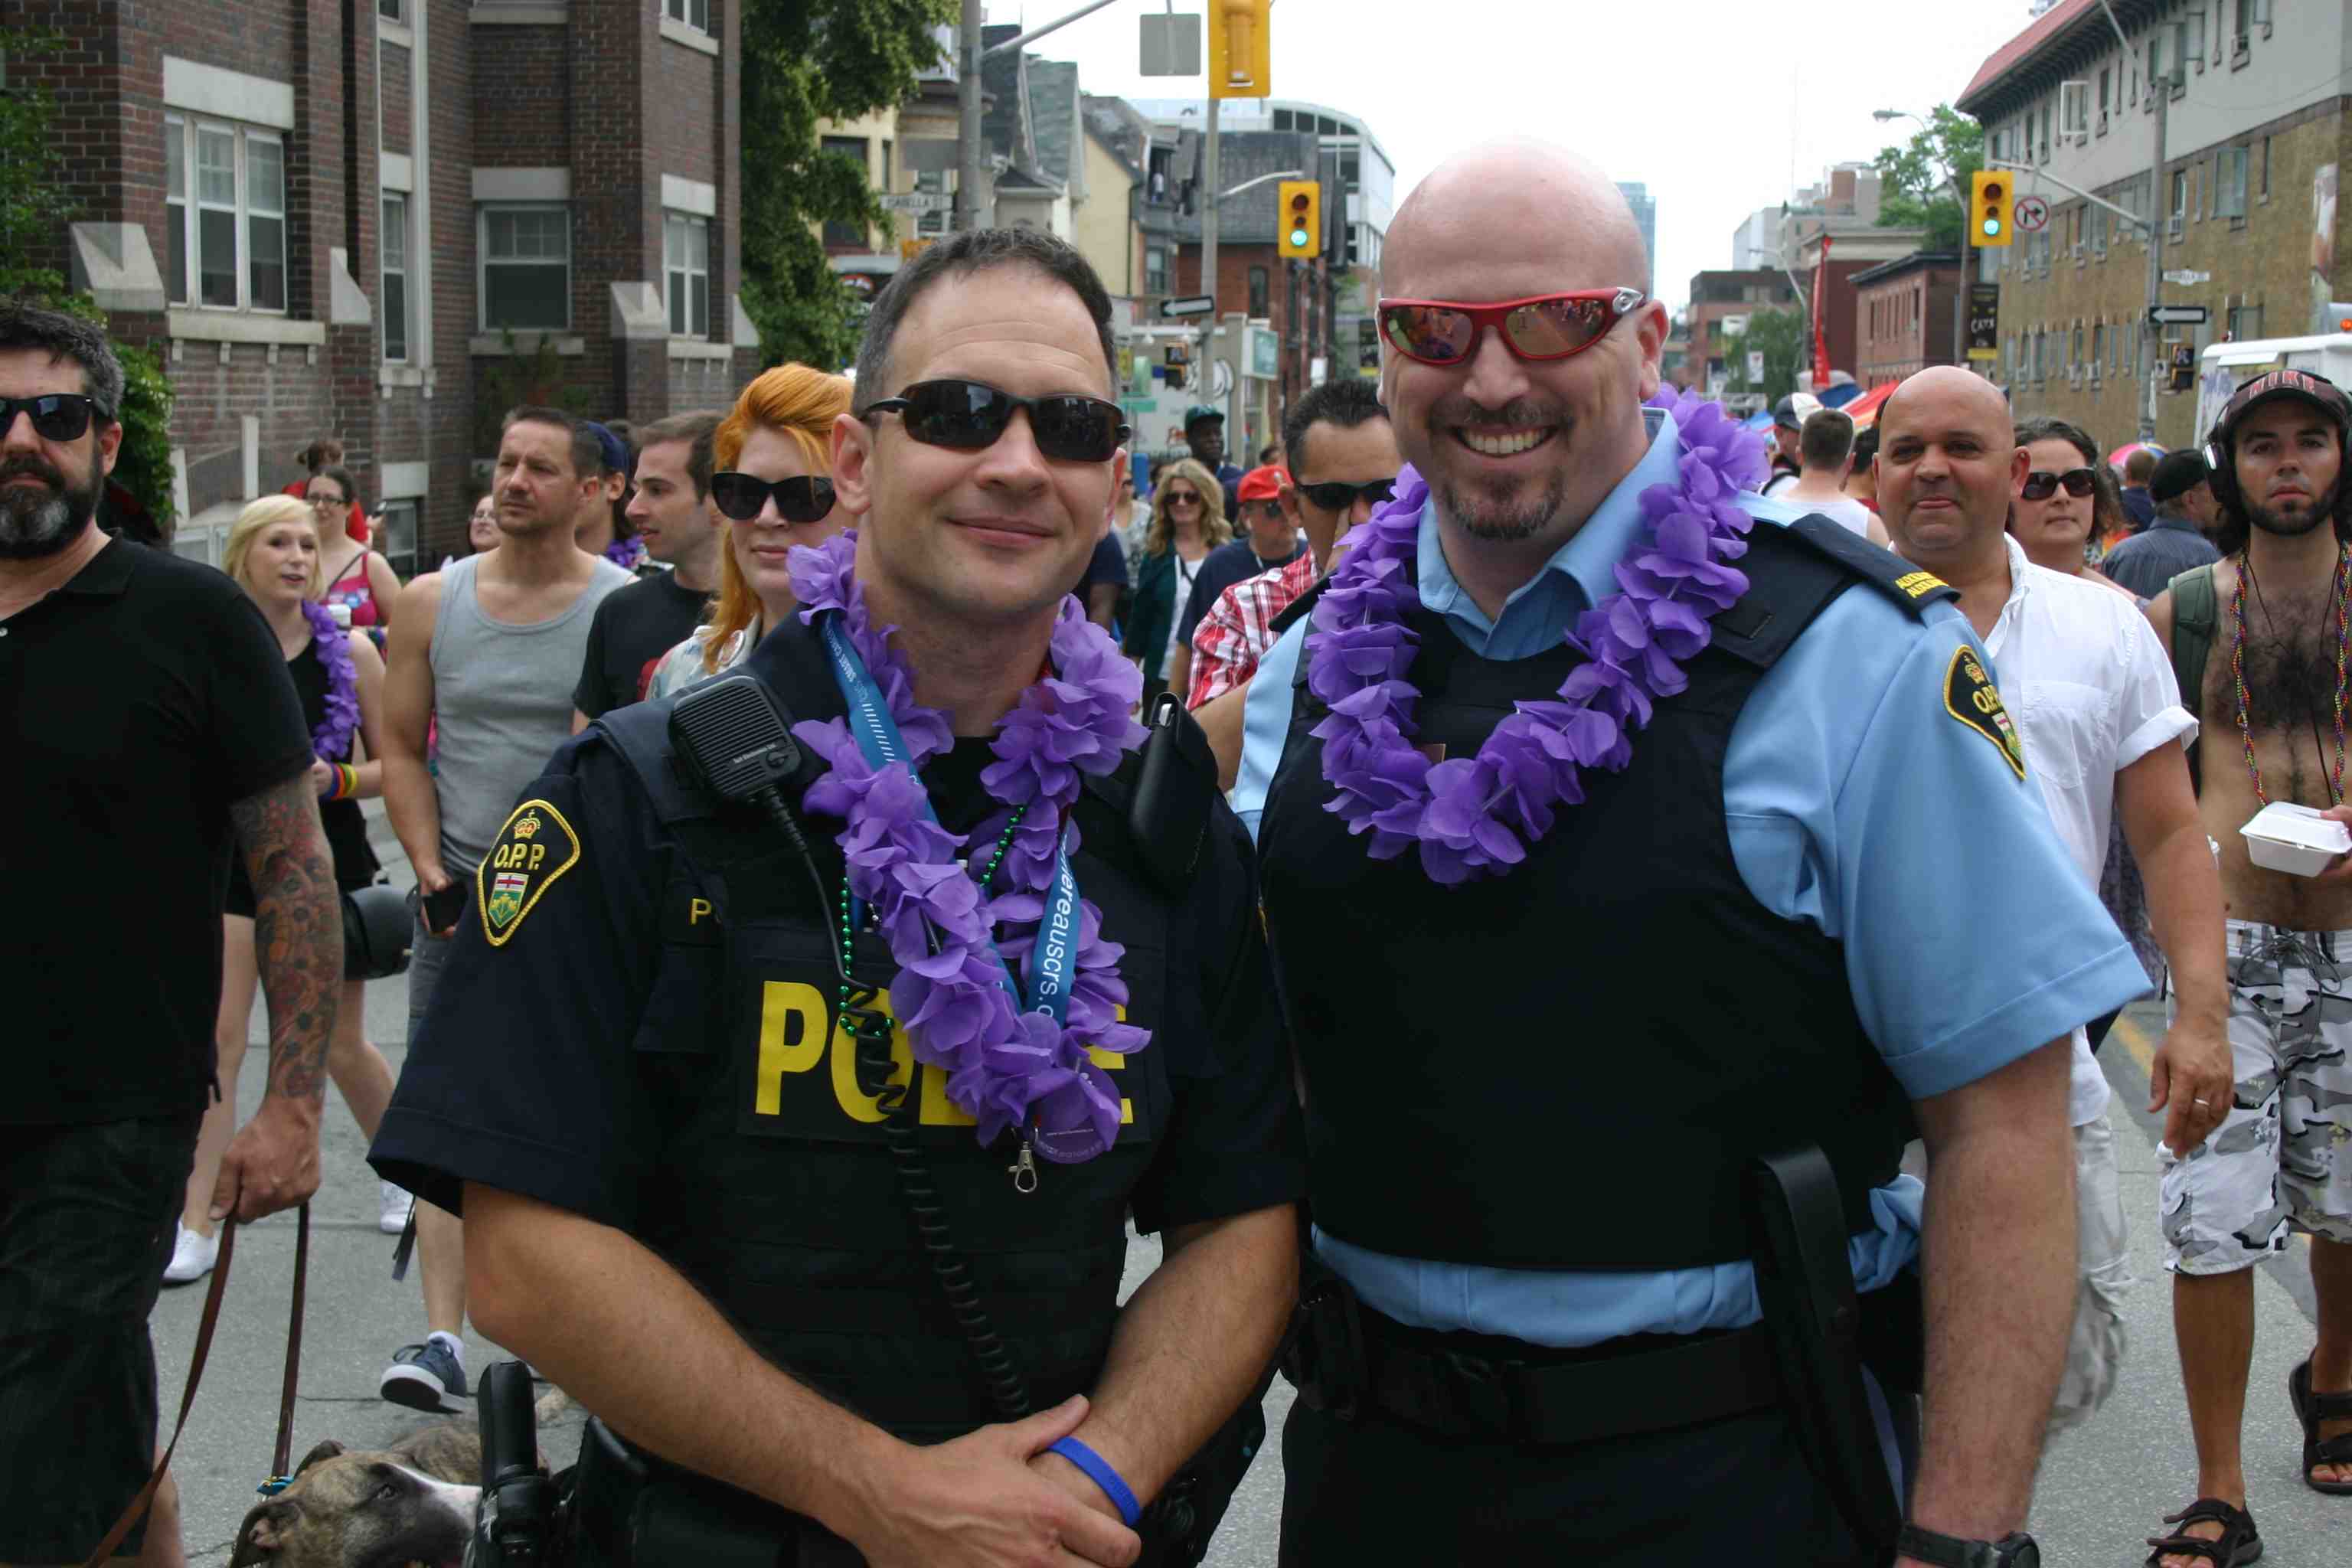 Toronto Pride: Bilder und Beobachtungen vom 29. und 30. Juni 2013 